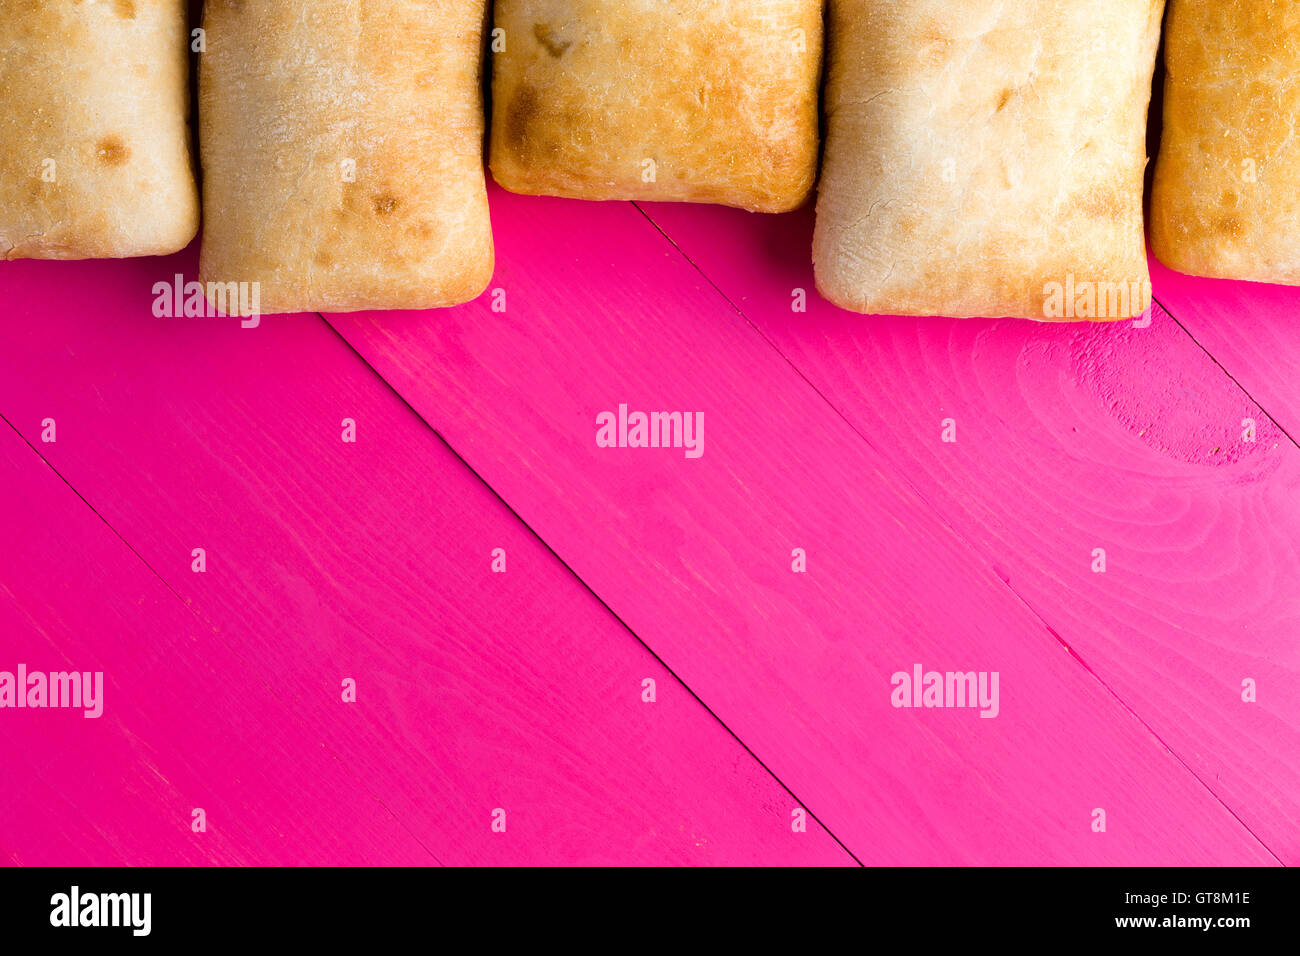 Confine di italiano ciabatta pane, una crosta di pane poroso realizzato con olio d'oliva, sul Rosa esotico di tavole di legno con copia spazio, overh Foto Stock